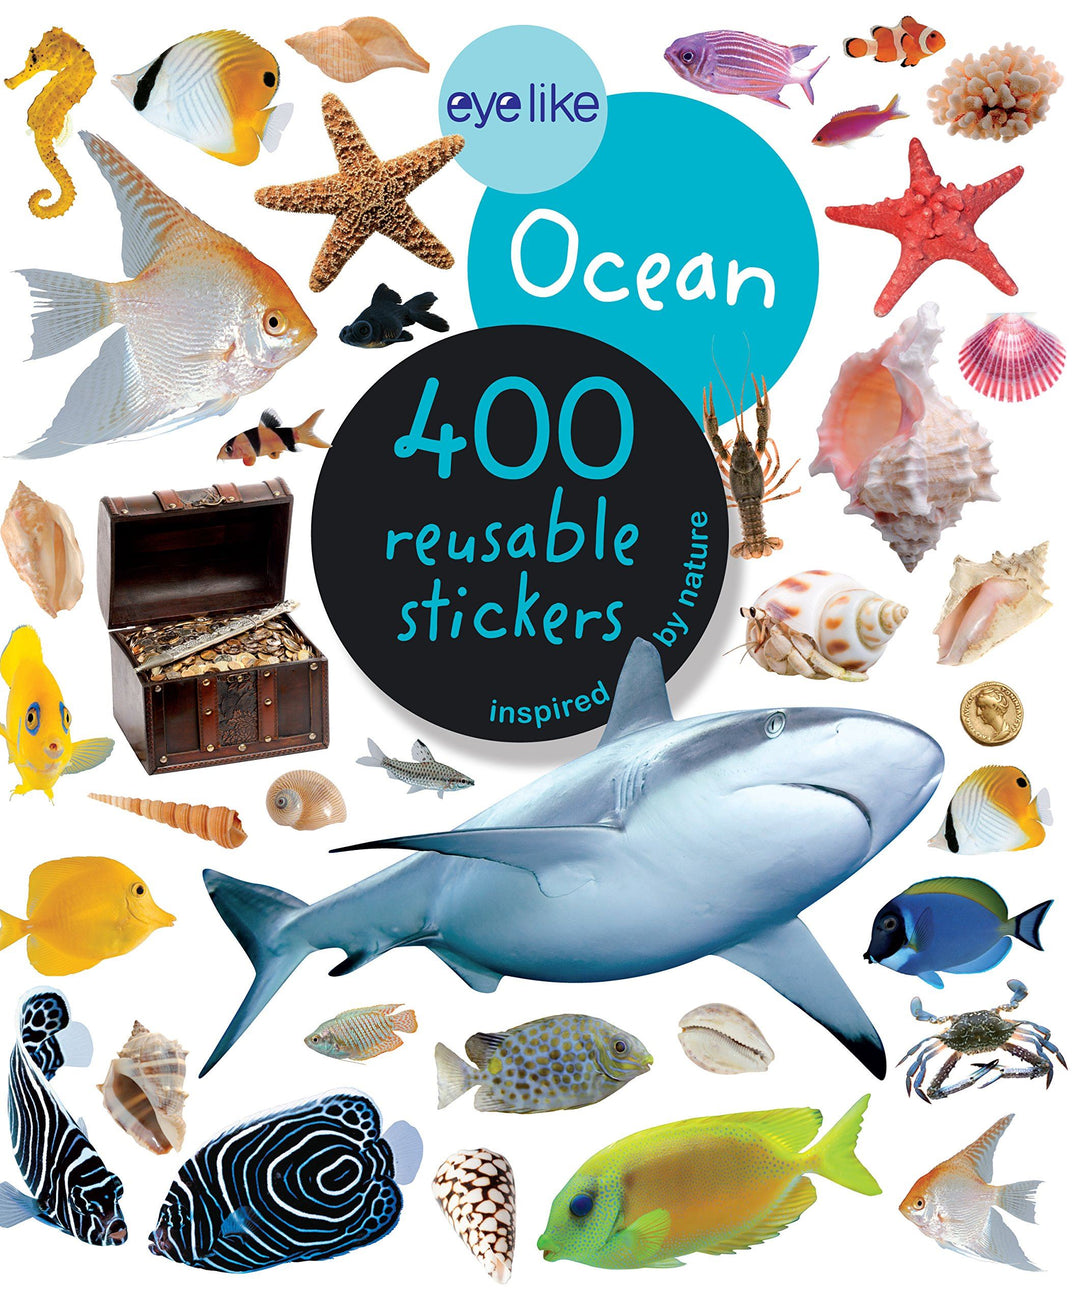 Eyelike Ocean - 400 Reusable Stickers